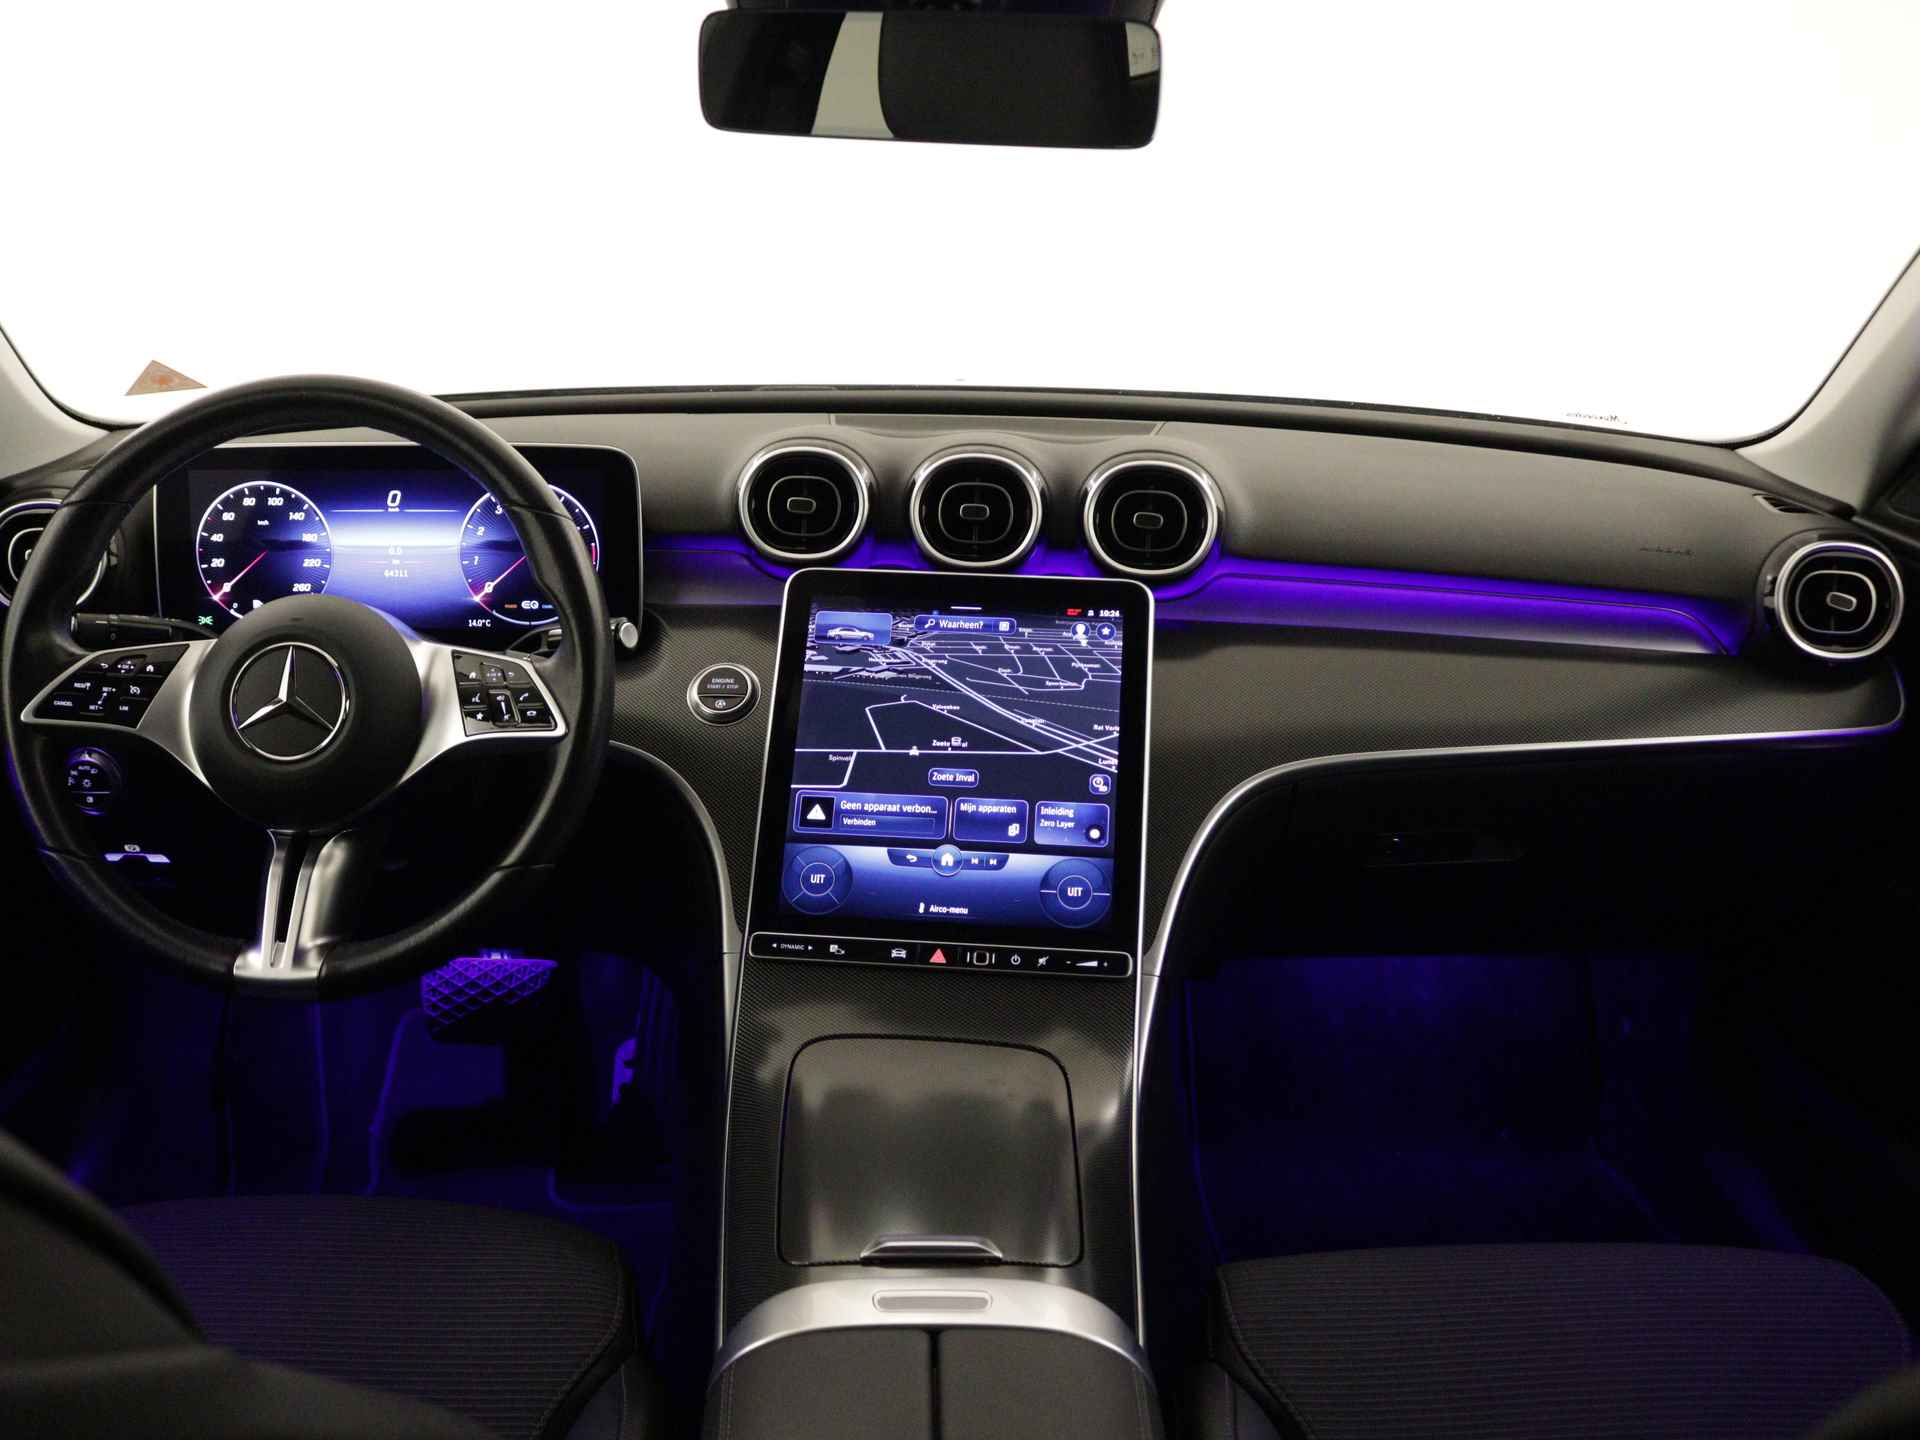 Mercedes-Benz C-Klasse 180 Luxury Line AMG lichtmetalen velgen | Navigatie | MBUX | Parking support | Trekhaak elct wegklapbaar | inclusief 24 maanden MB Certified garantie voor europa - 25/38